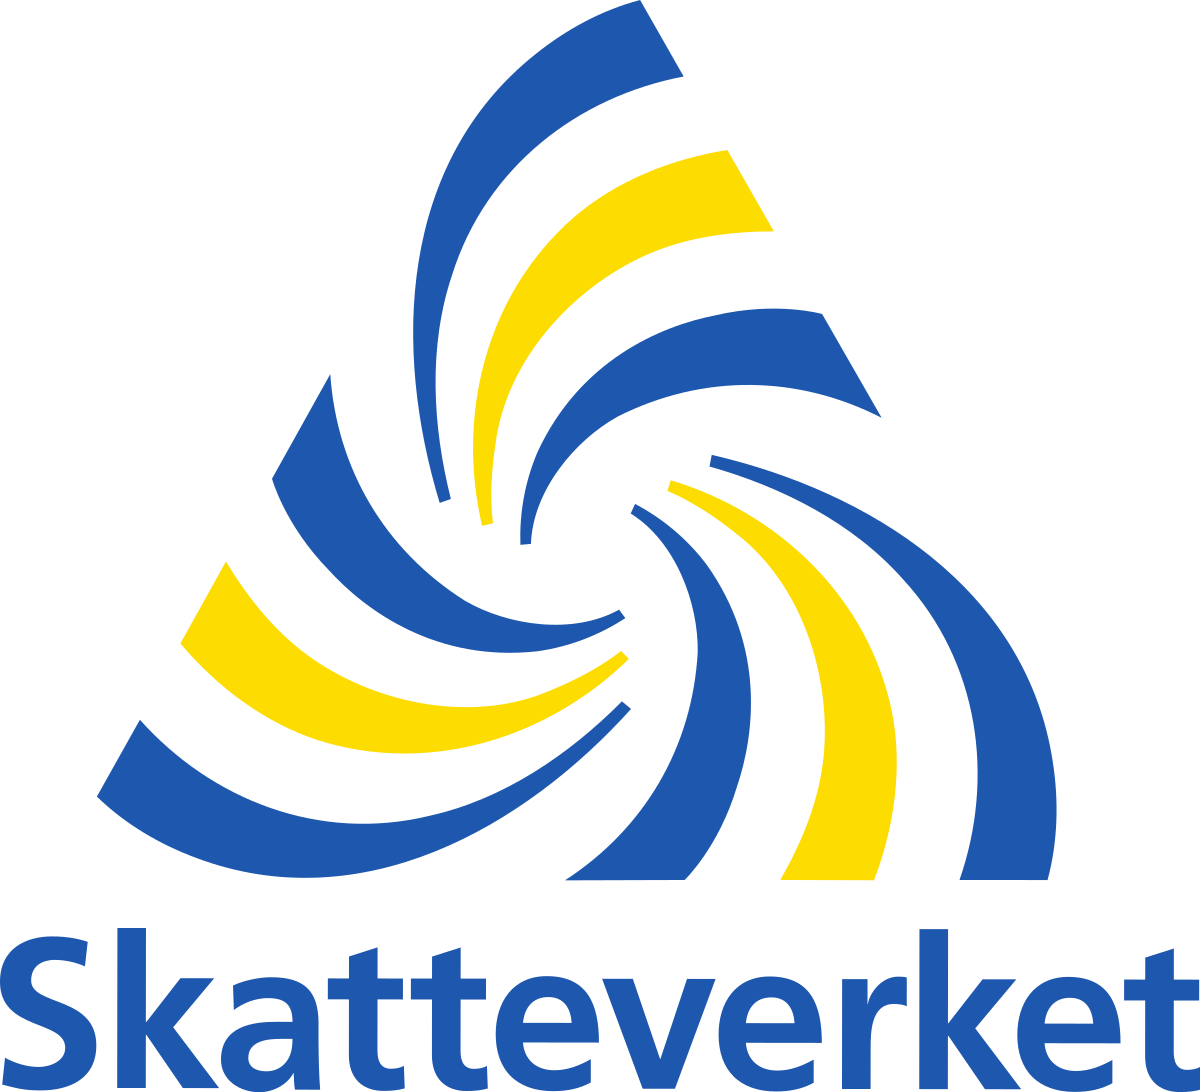 11265 Skatteverket Logo.svg